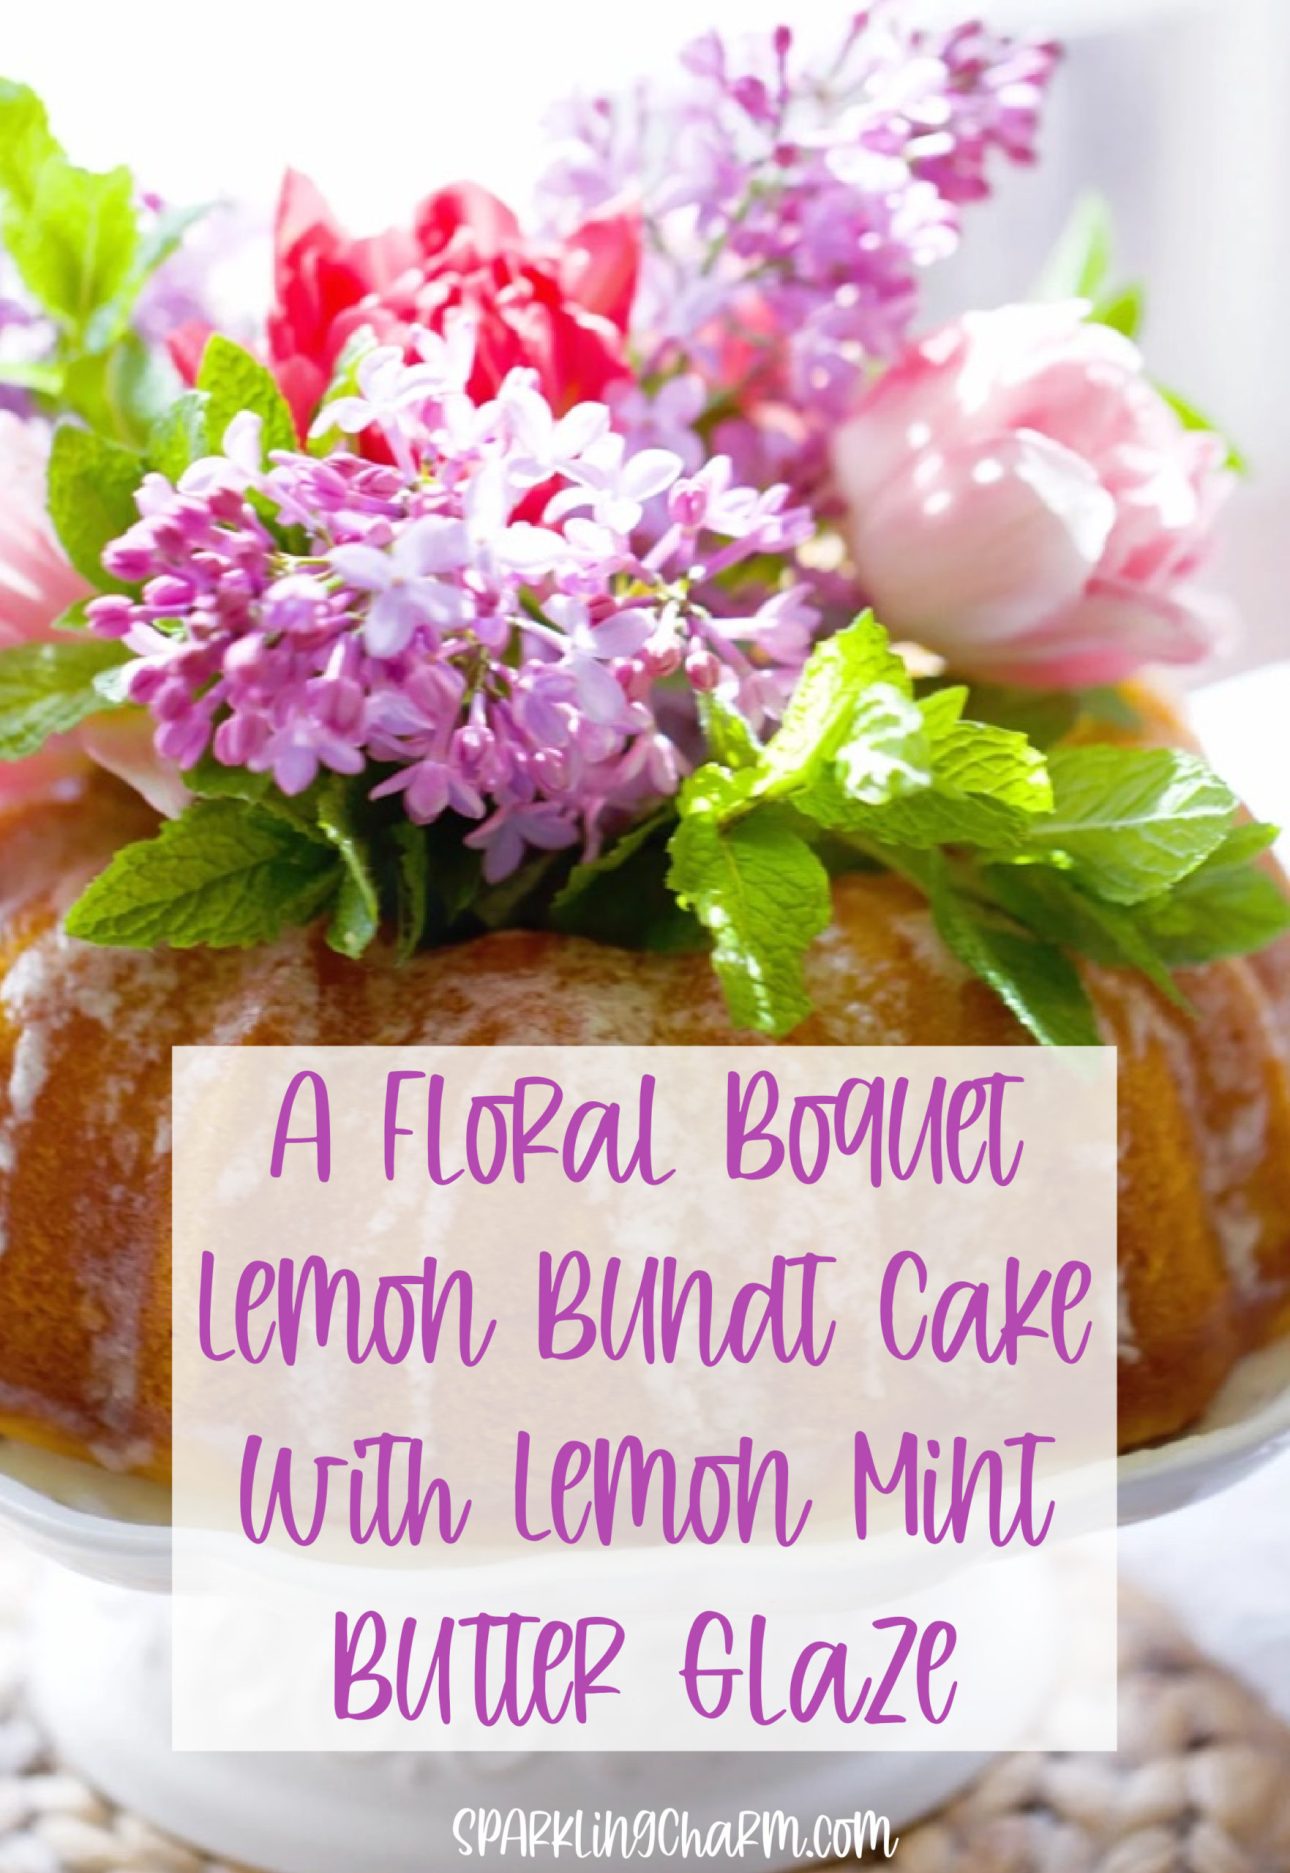 A Fresh Bouquet Lemon Bundt Cake with Lemon Mint Butter Glaze